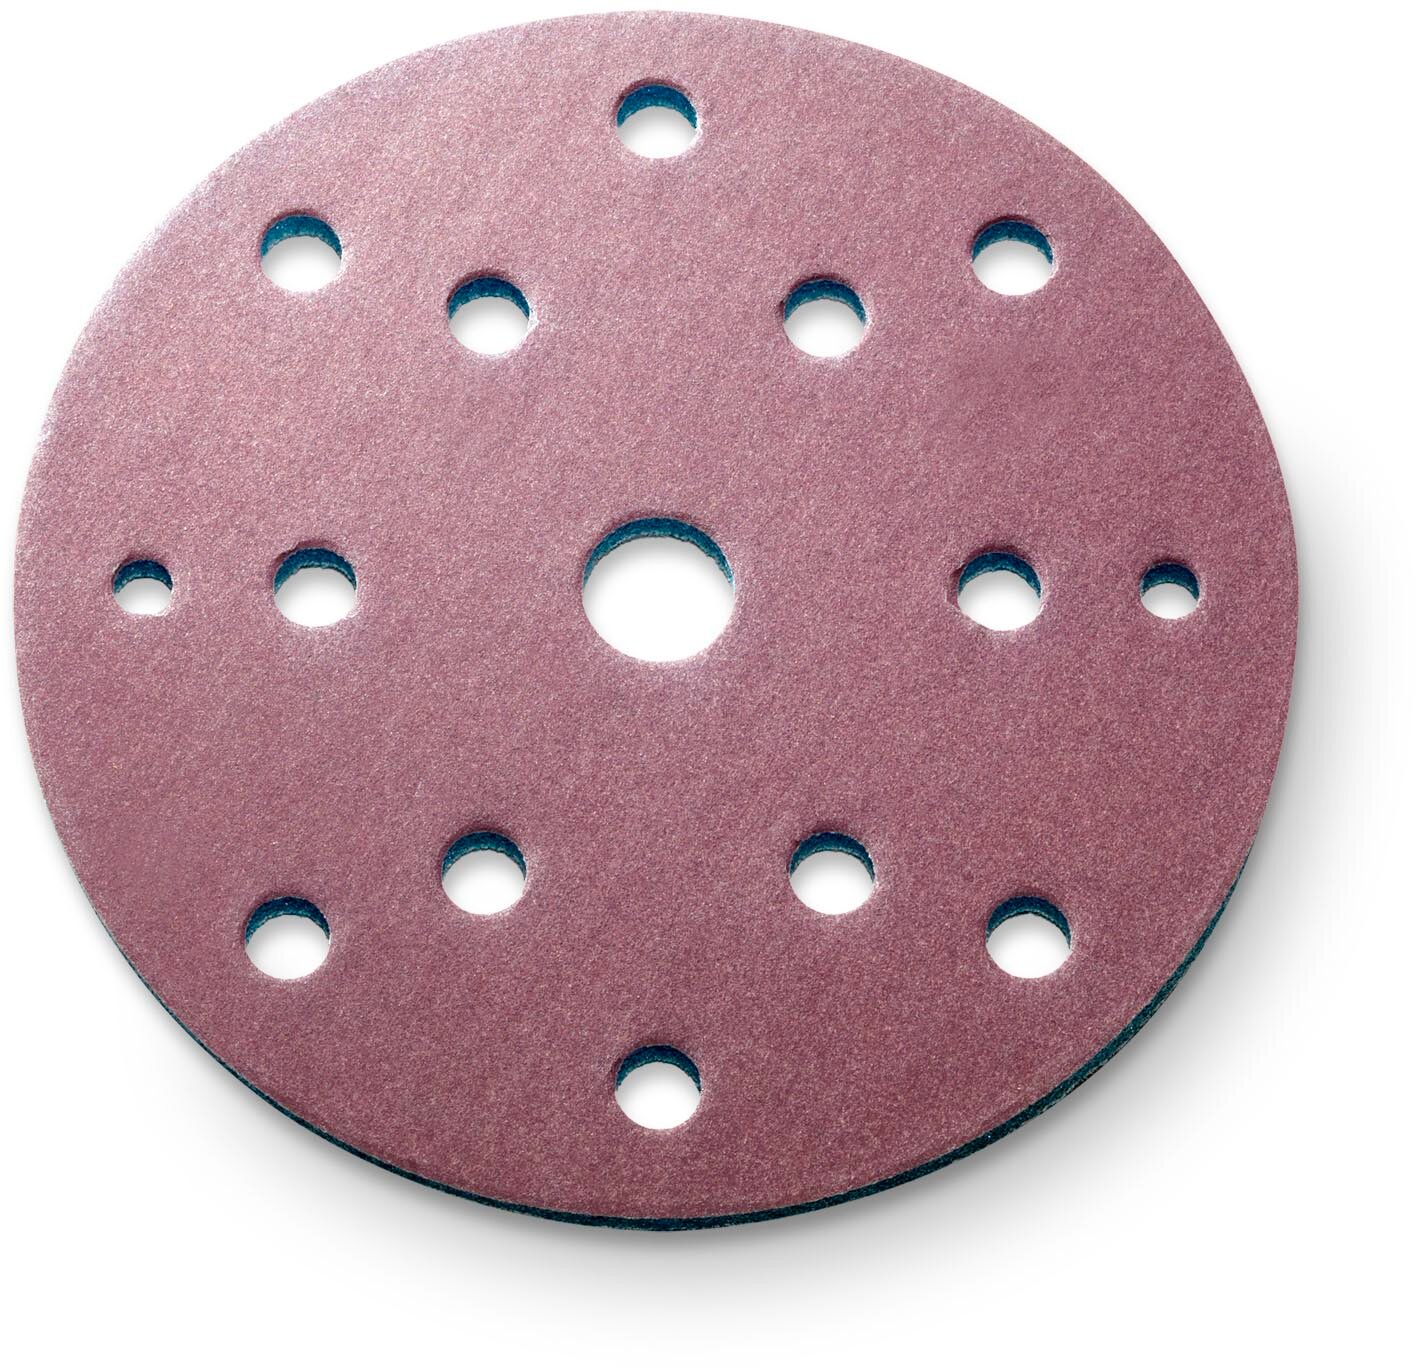 siaspeed disque abrasif Ø150mm 15 trous grain 360 (100 pièces)